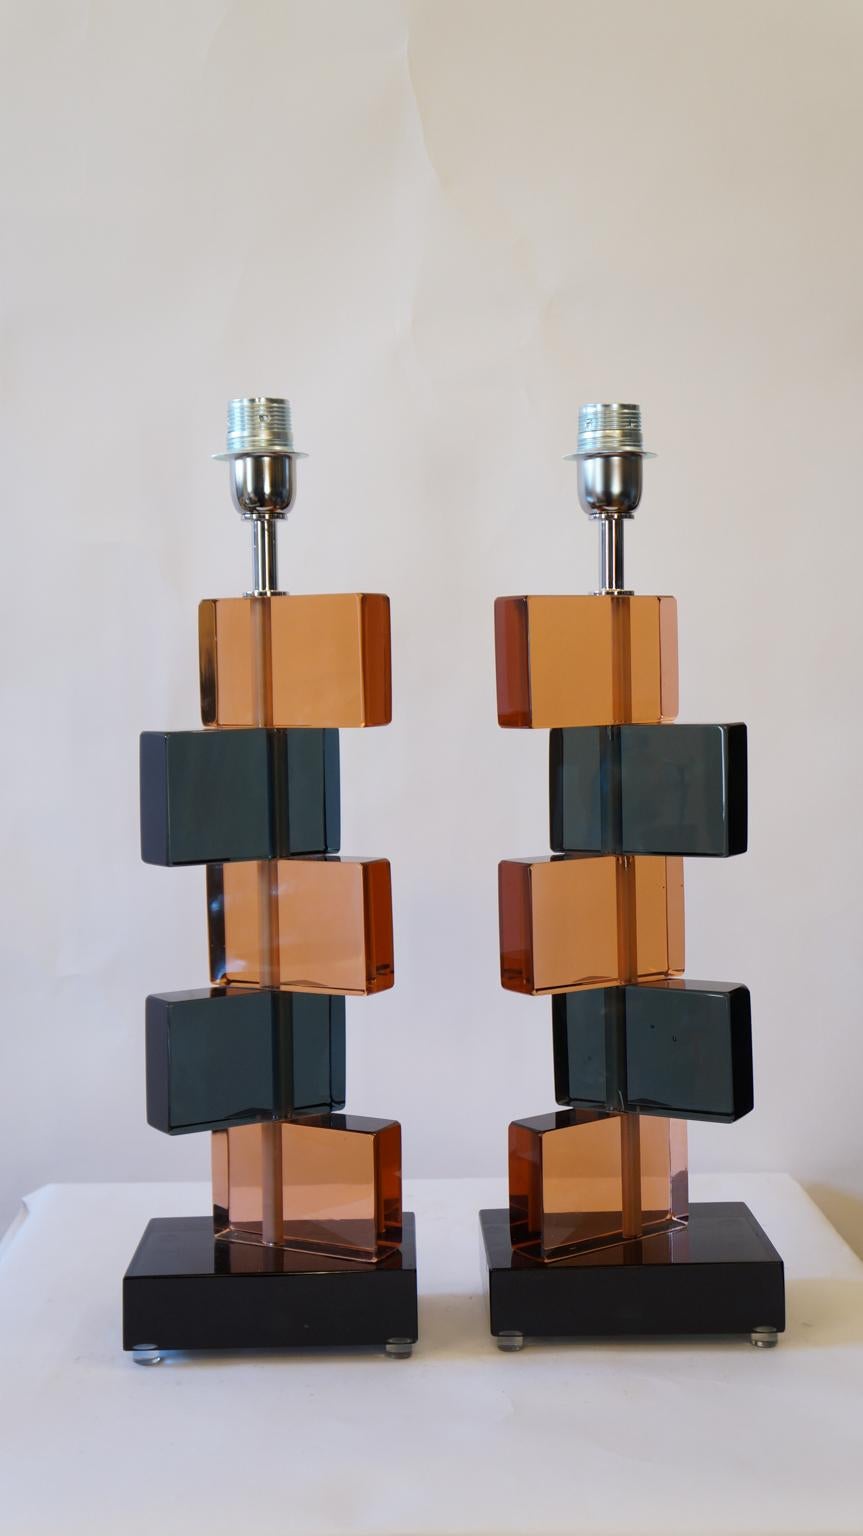 Deux lampes de table en verre de Murano réalisées par Alberto Donà en 1975.
On peut y voir la simplicité, l'Eleg, la linéarité. Il s'agit en fait d'un modèle simple, et c'est grâce à ses couleurs que sa beauté ressort. 
On note en effet la